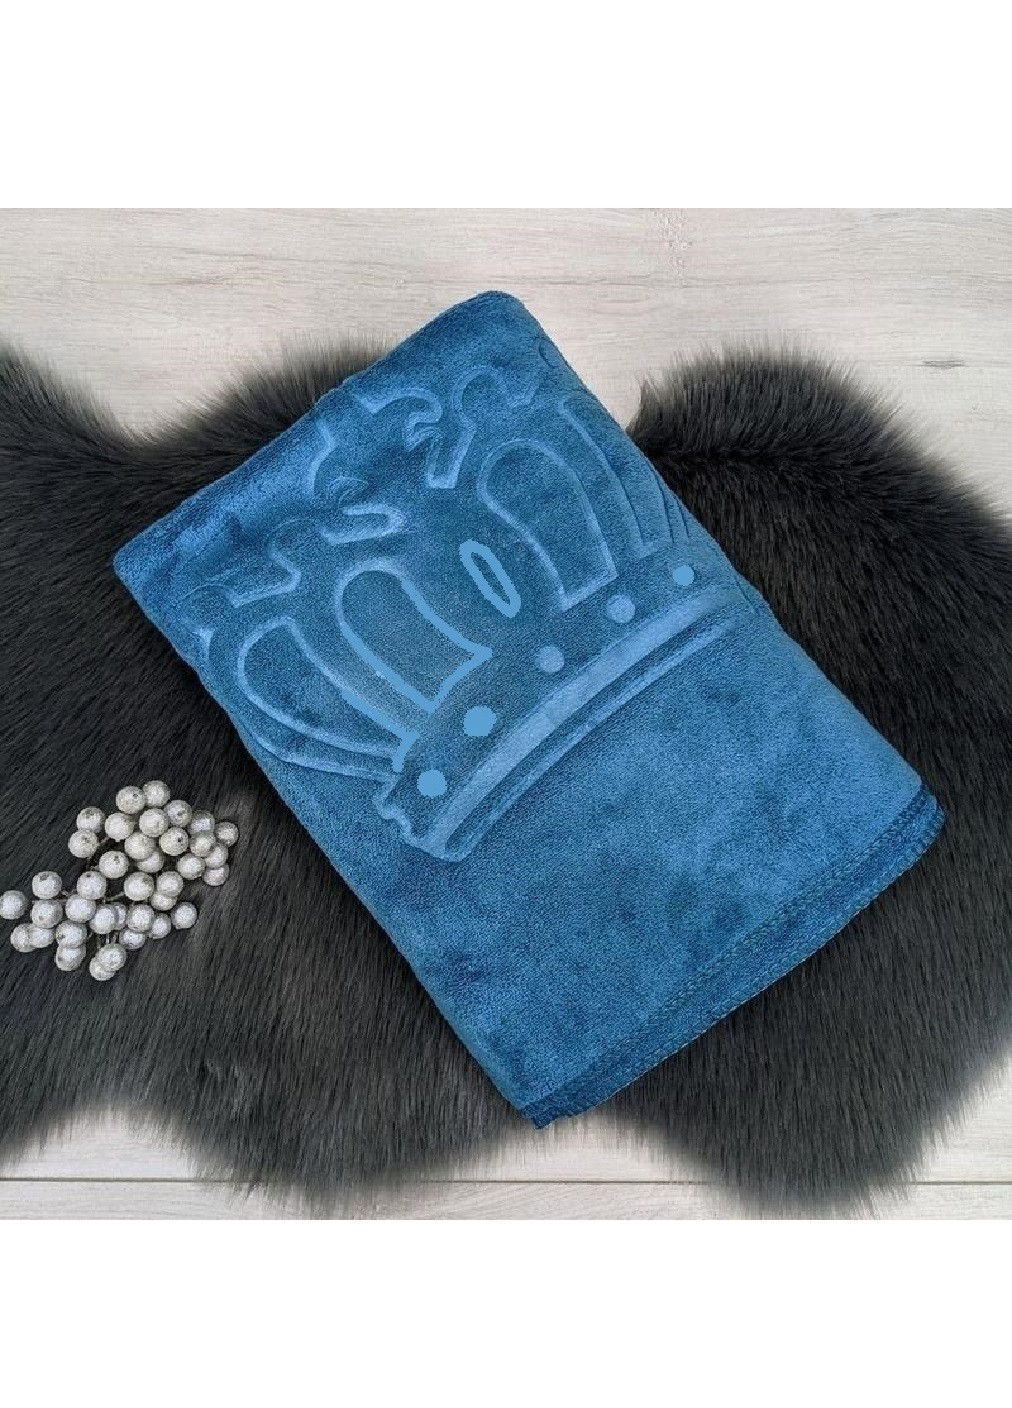 Unbranded полотенце микрофибра велюр для ванны бани сауны пляжа быстросохнущее с узором 170х90 см (476117-prob) корона голубое однотонный голубой производство -